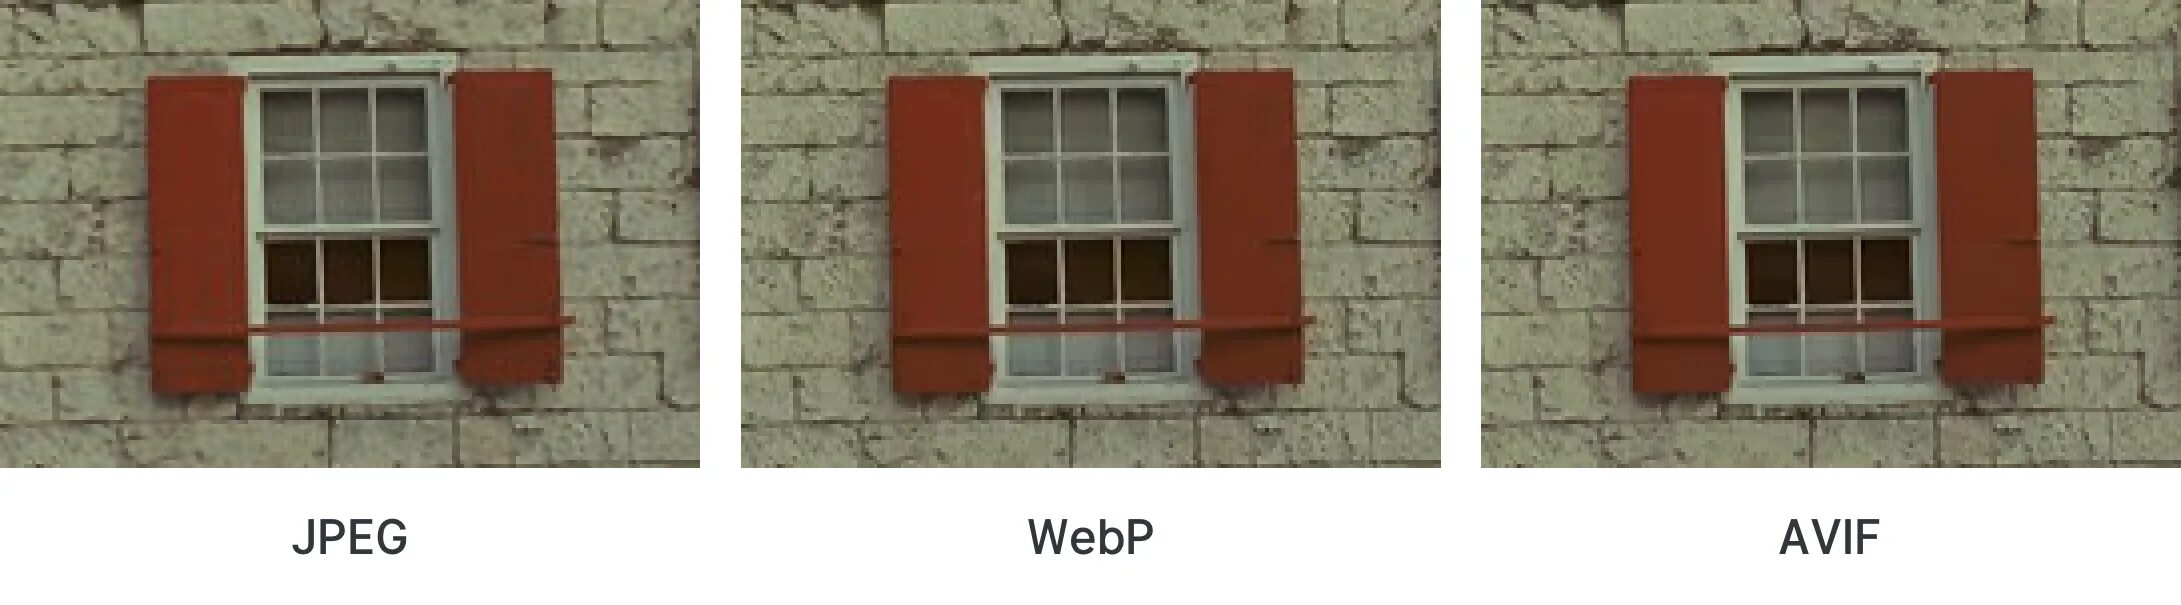 Webp мемы. Webp изображения. Webp vs jpeg. Webp в jpeg. Webp без потери качества